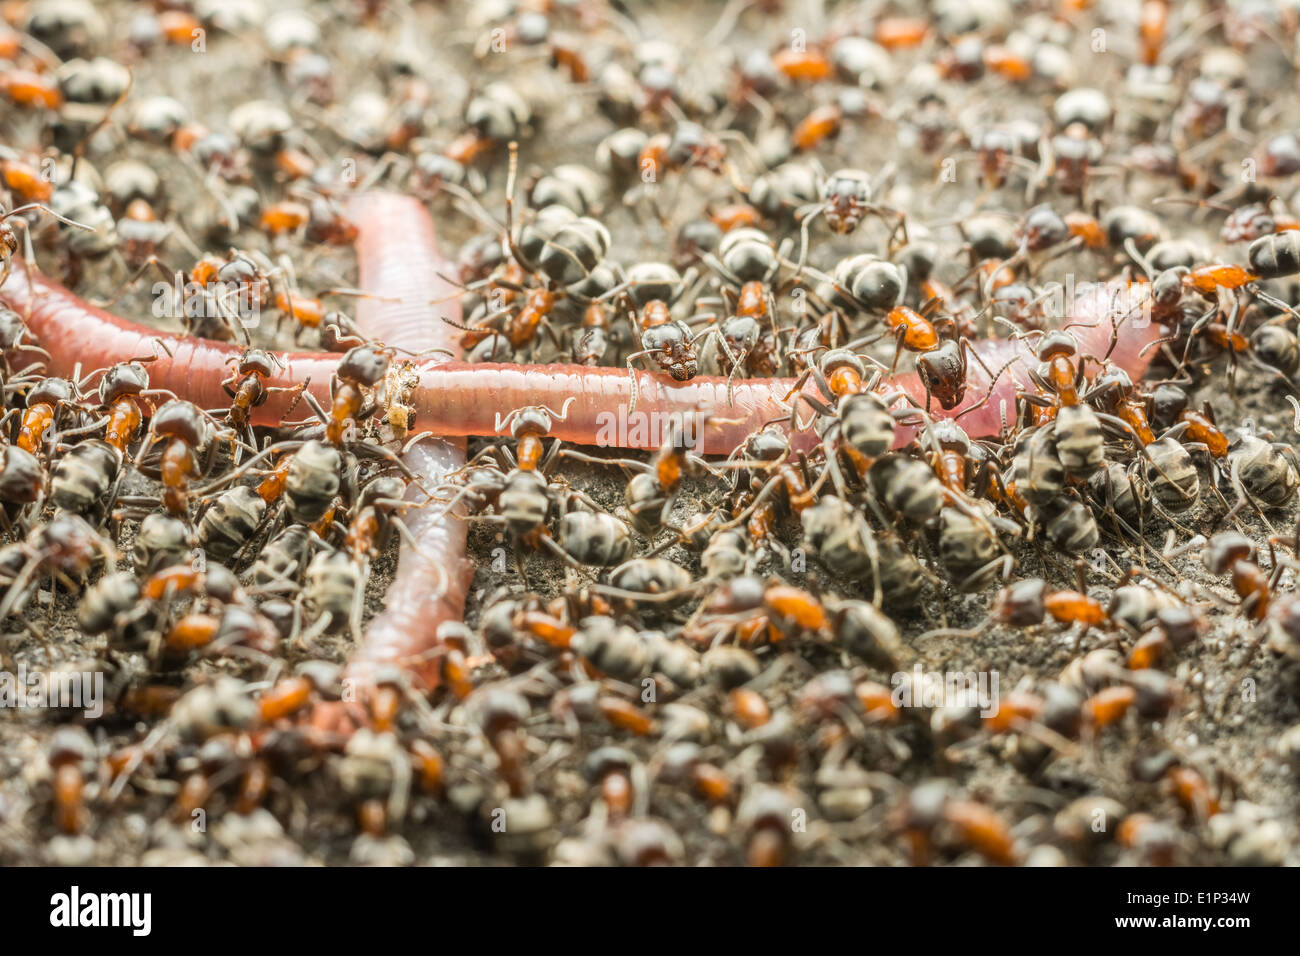 Schwarm von Ameisen Essen Regenwurm Makro Nahaufnahme Stockfoto